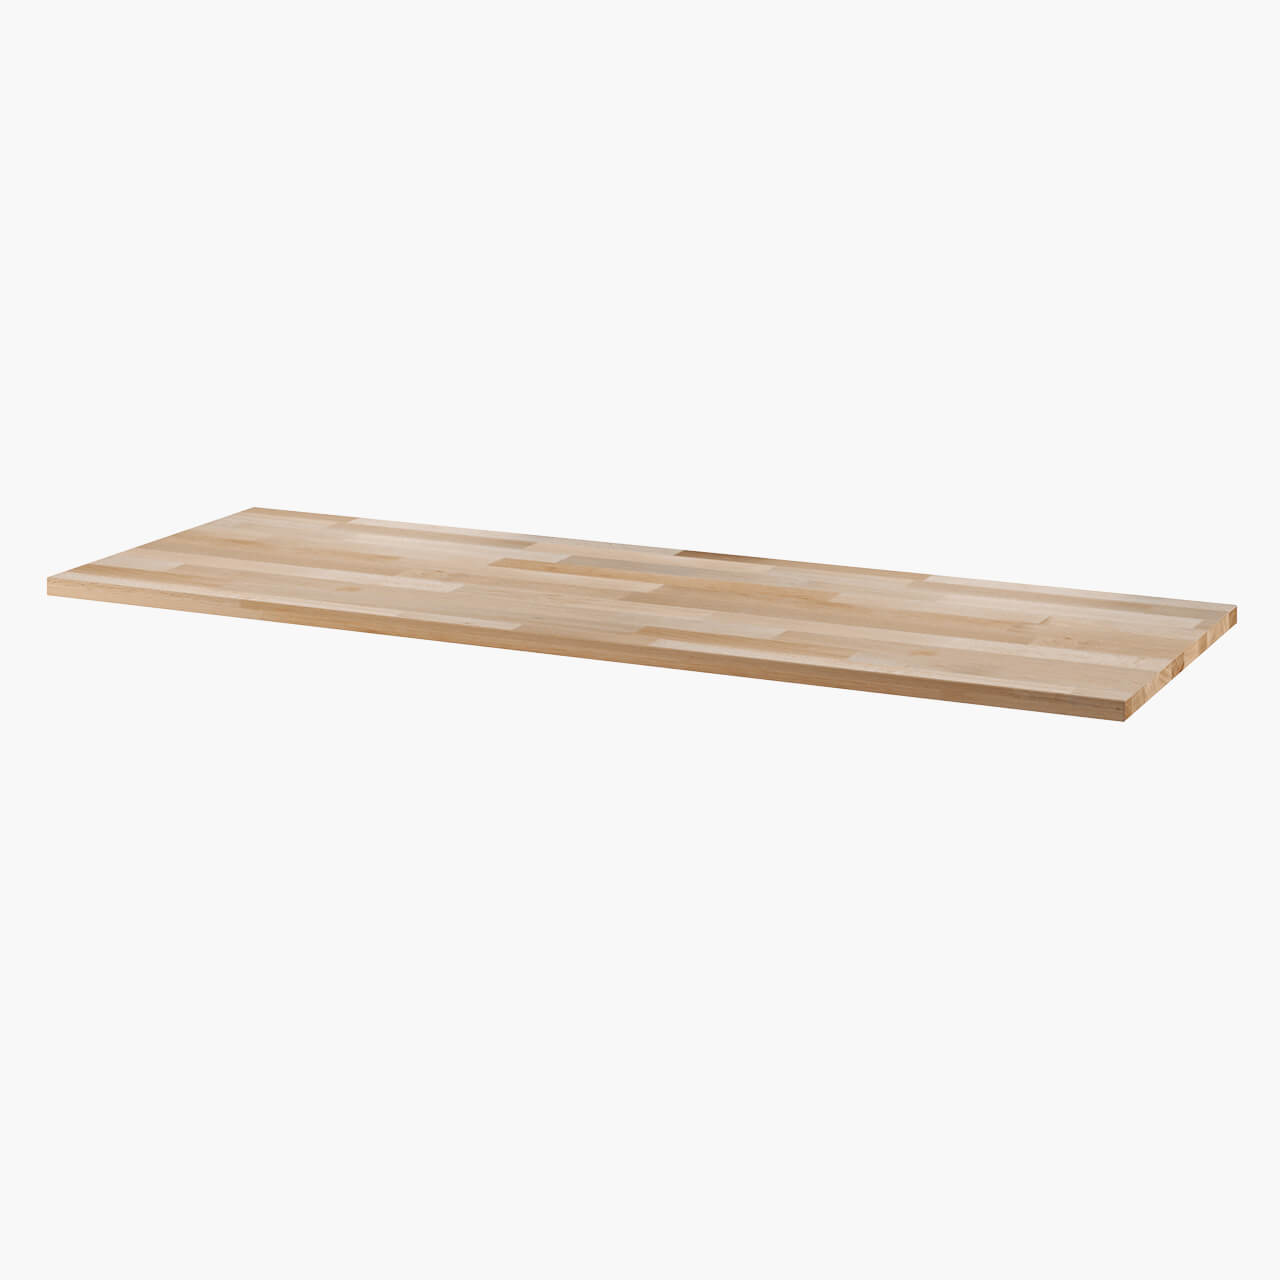 Holzplatte in Buche und geölt für Ikea Besta Schrank zur Auflage